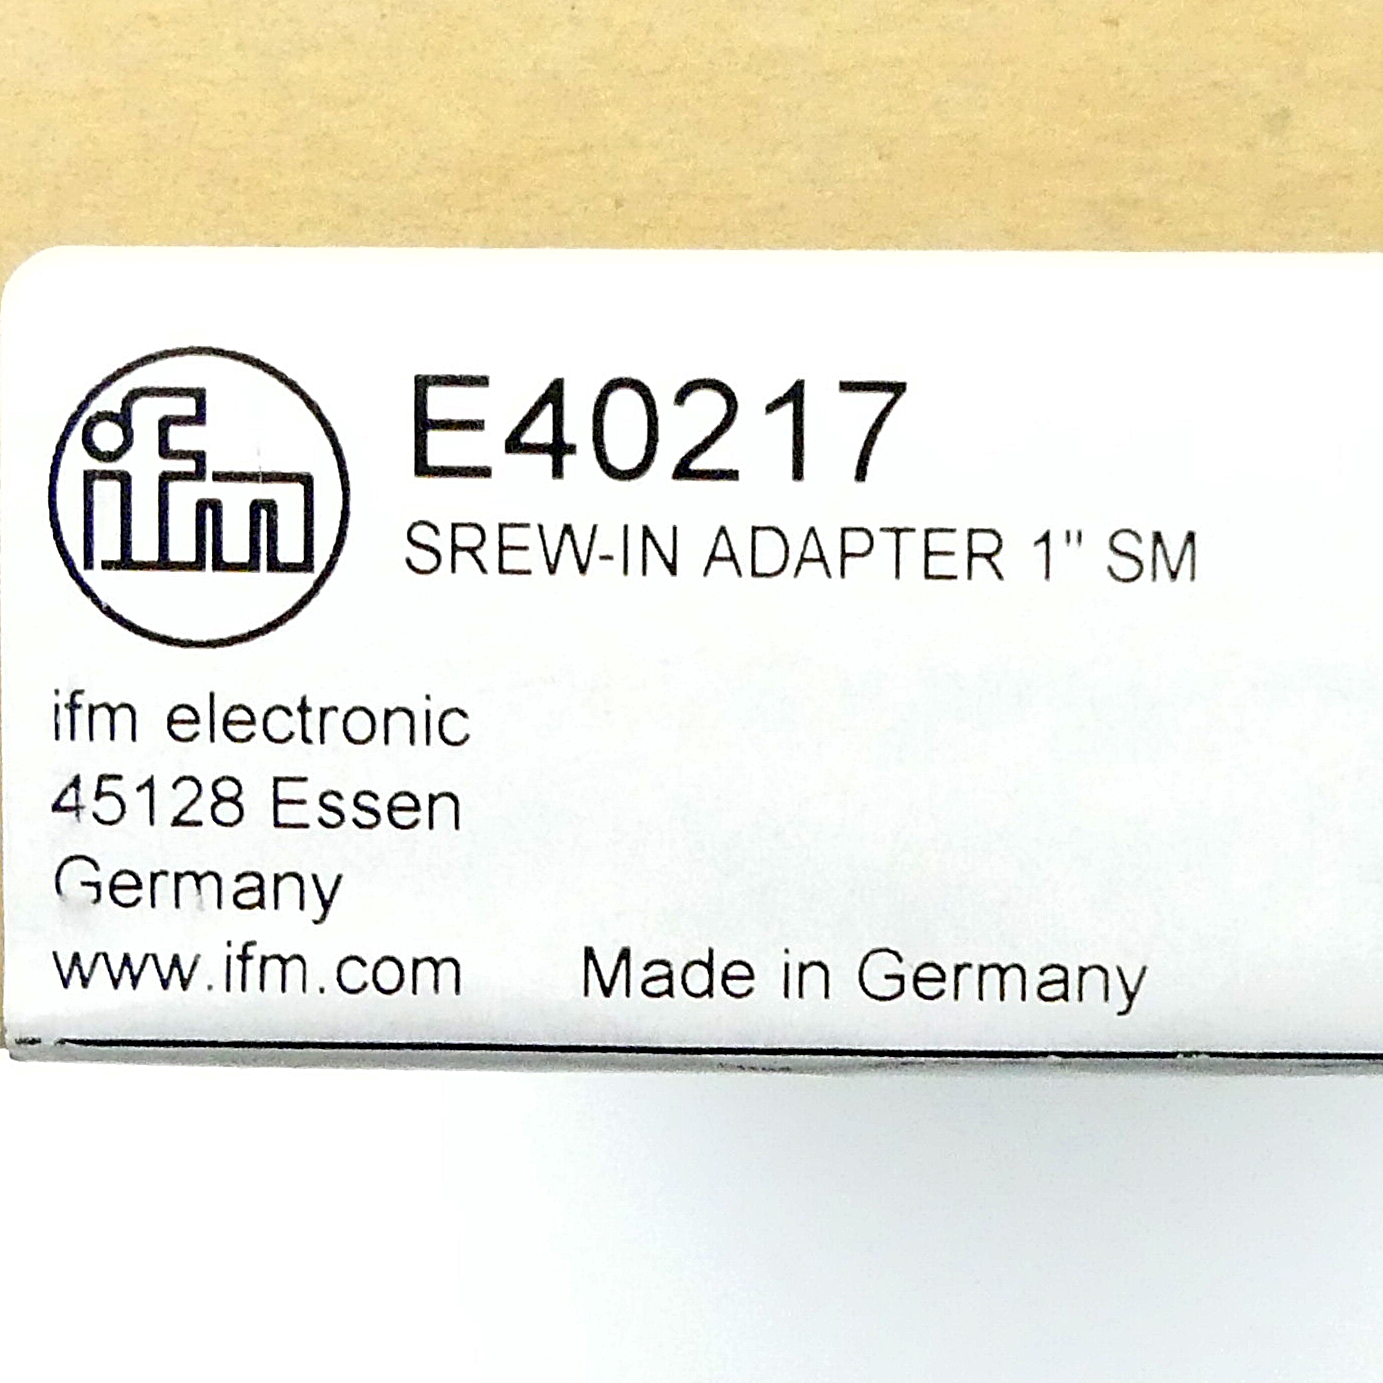 2 Pieces Srew-in adapter 1" SM 